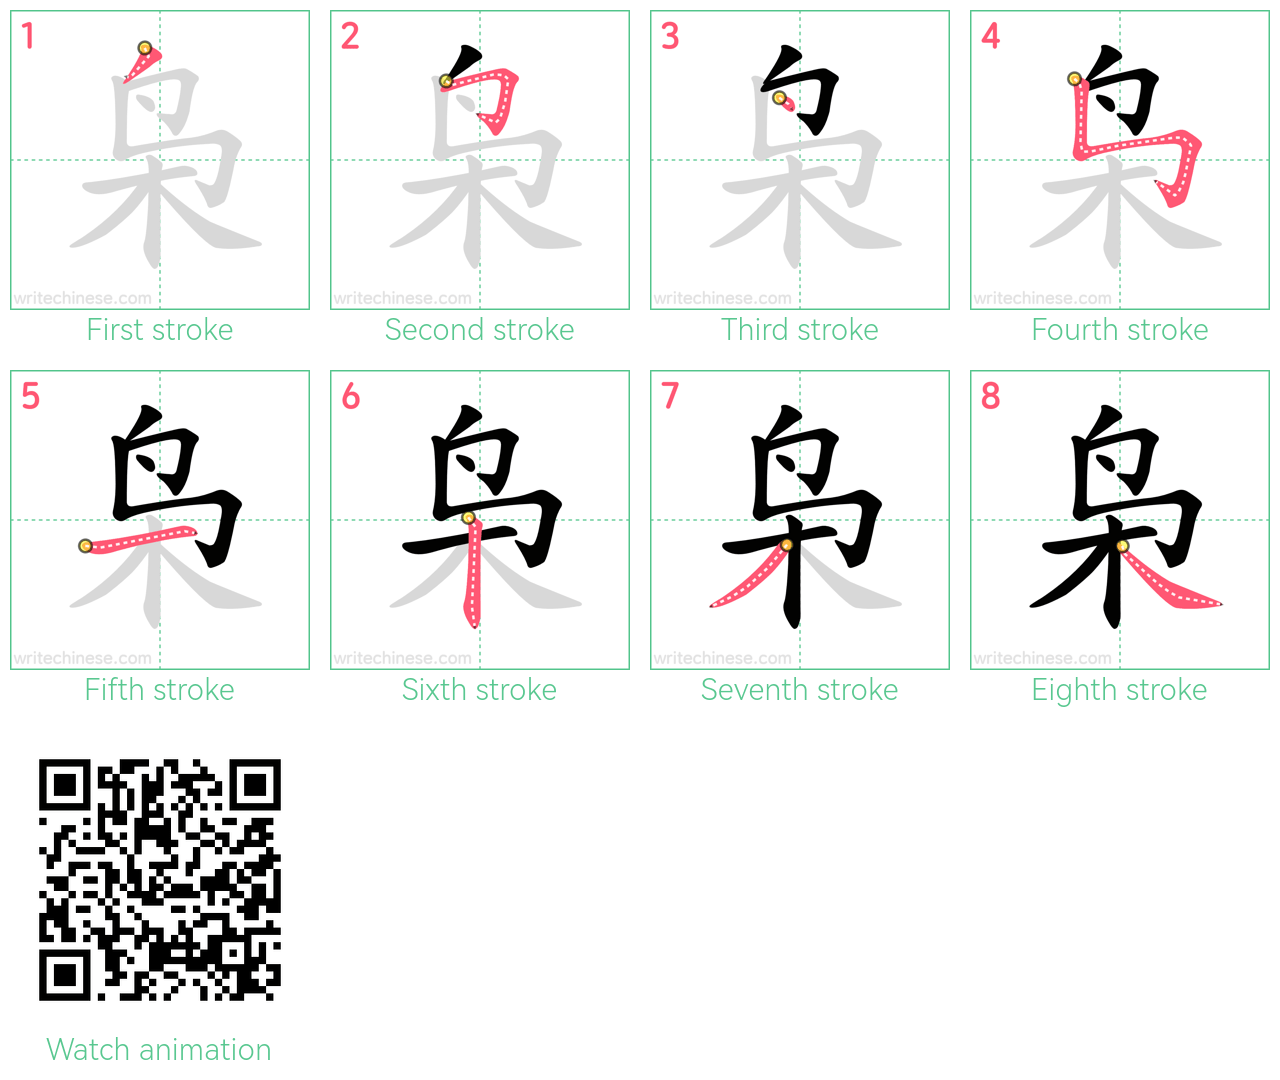 枭 step-by-step stroke order diagrams